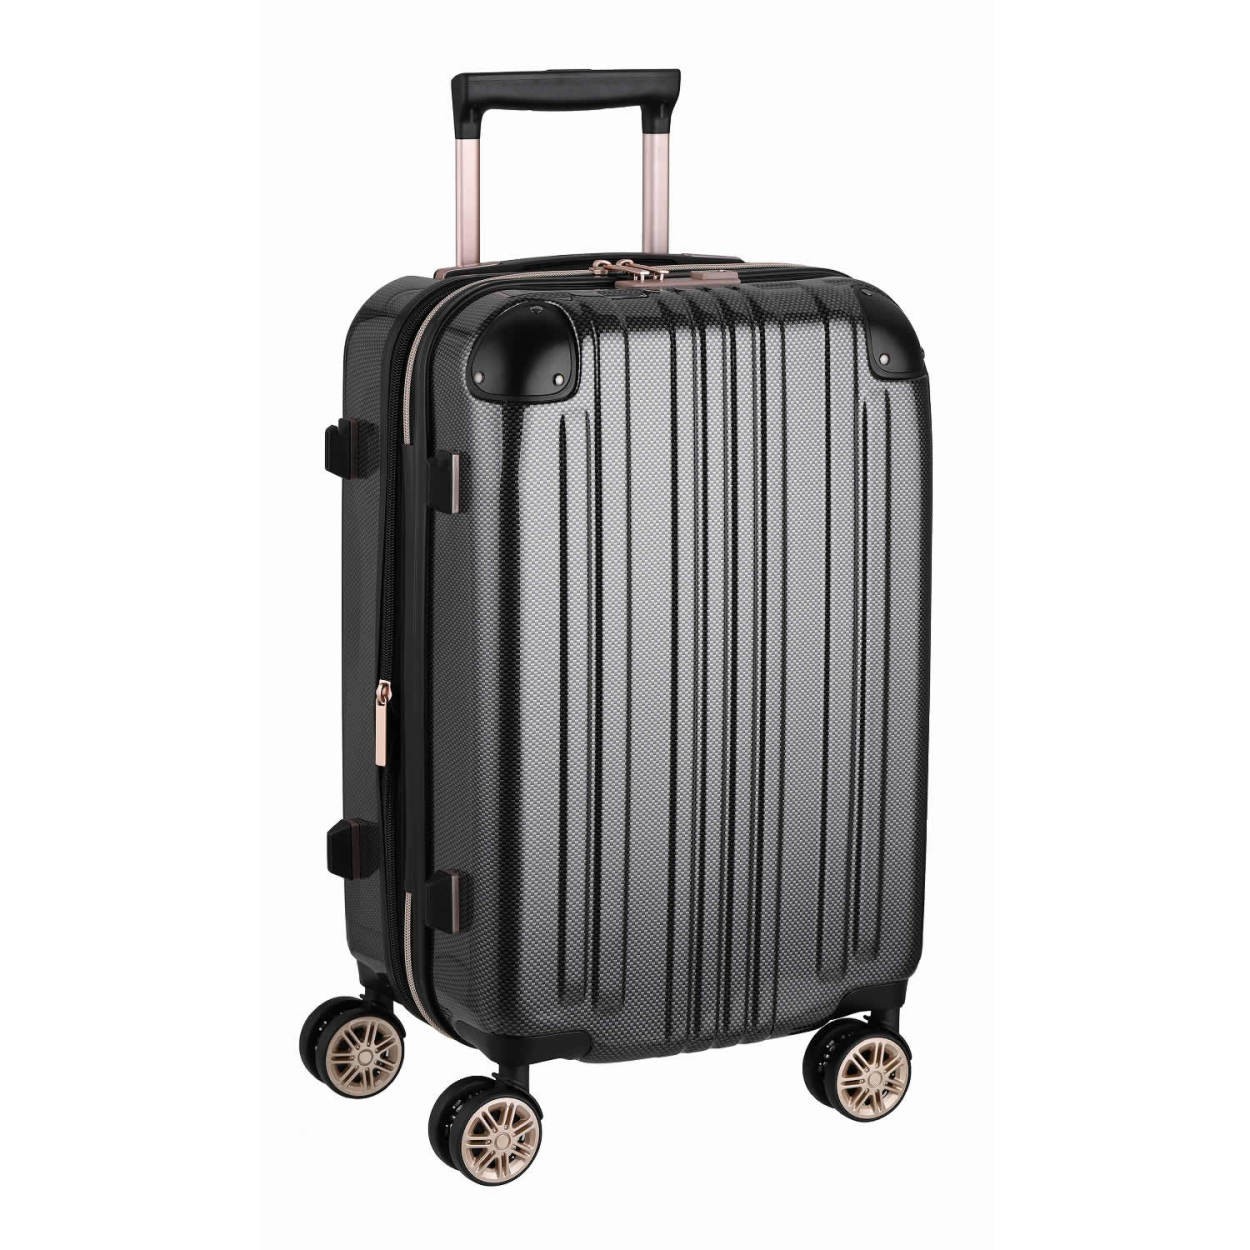 スーツケース キャリーバッグ トランクケース レディースバッグ Sサイズ 小型 超軽量 おしゃれ かわいい 拡張 キャリーケース キャリーバッグ  5122-55